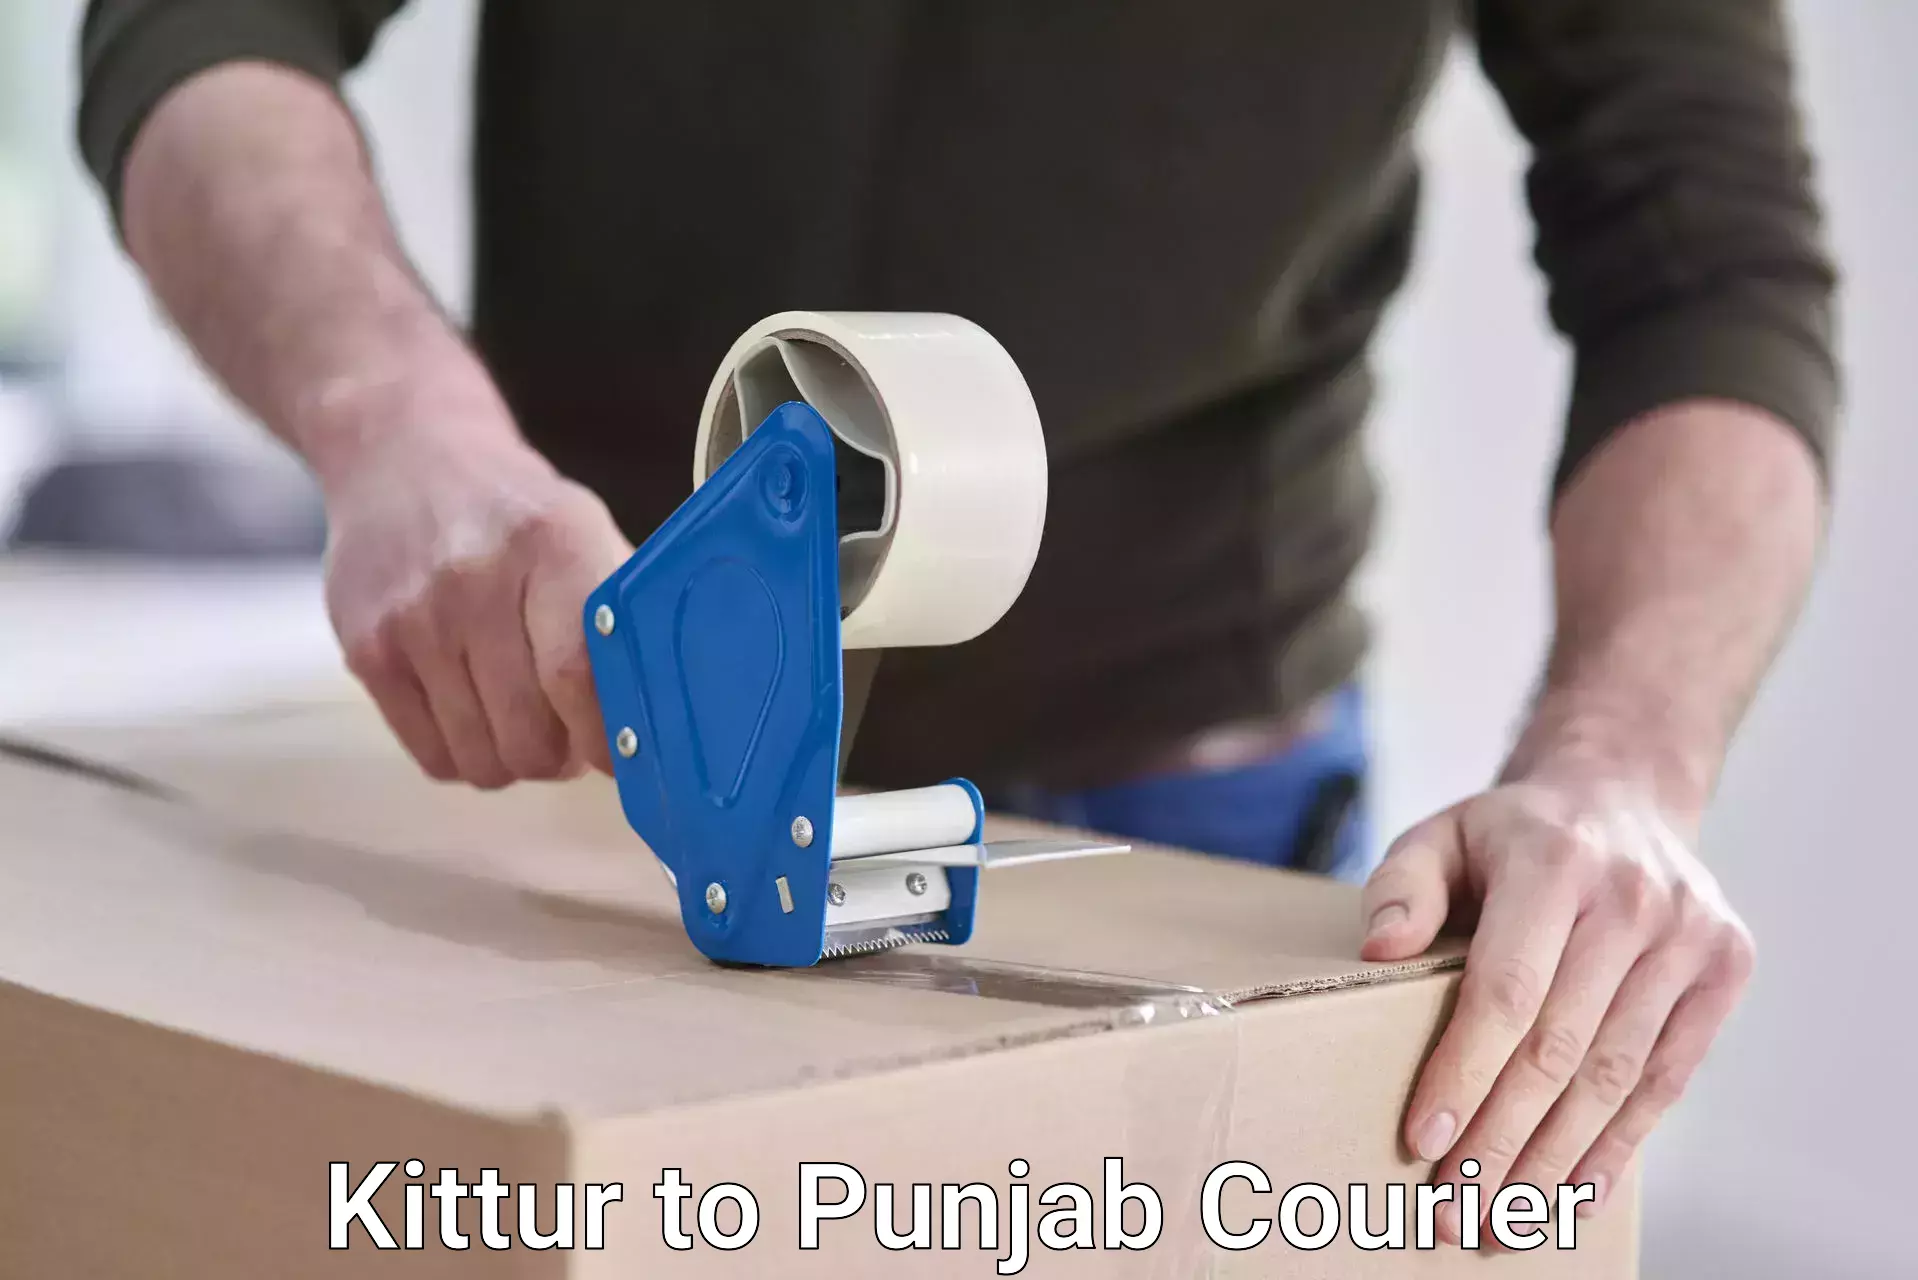 Next-generation courier services Kittur to Gurdaspur